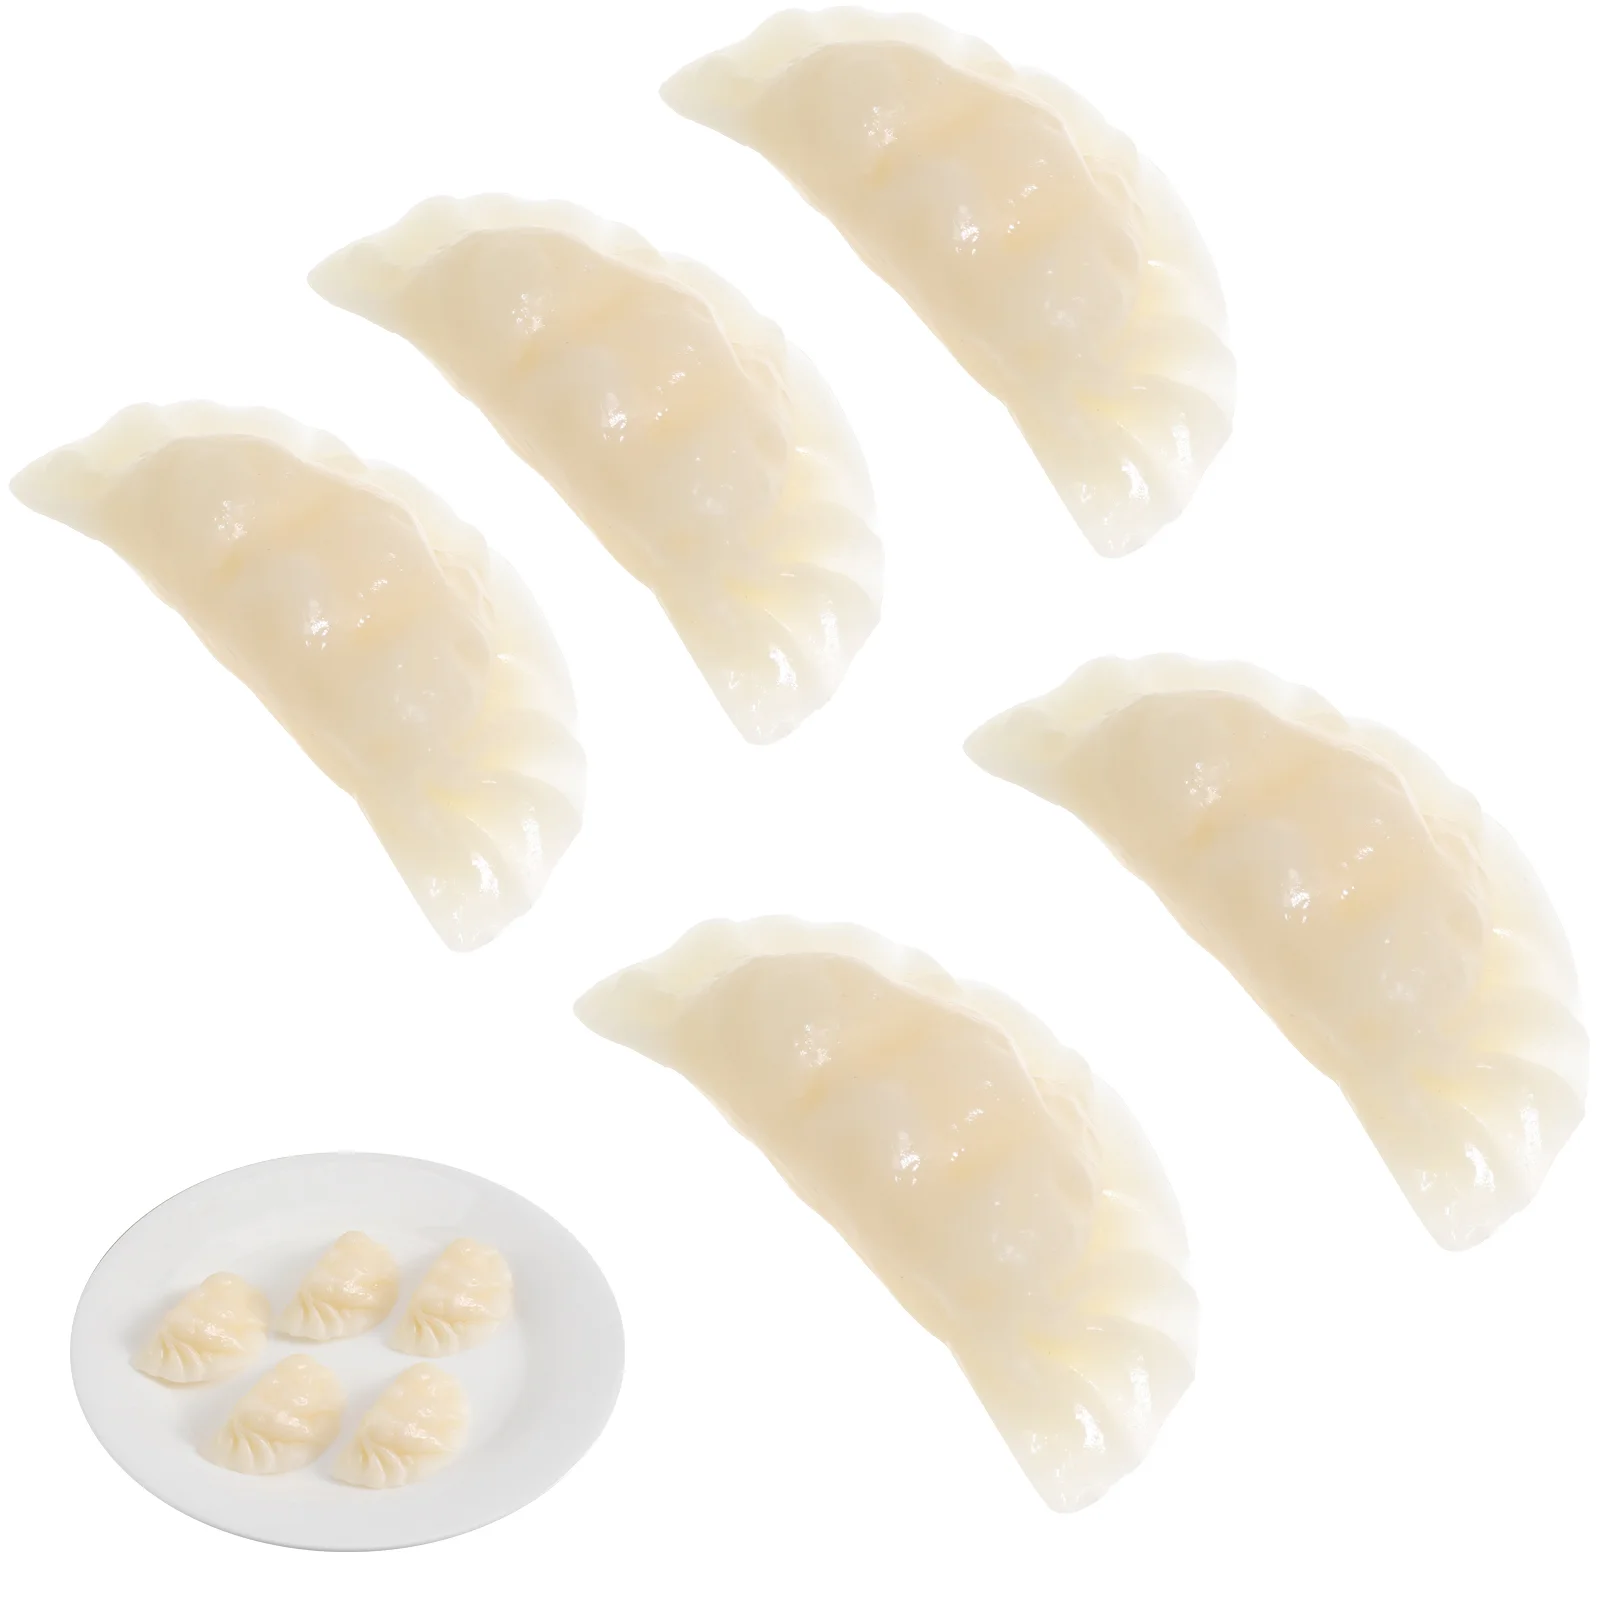 

5 Pcs 6cm Imitation Dumplings False House Food Adornment Models Decorate Simulation Pvc Child